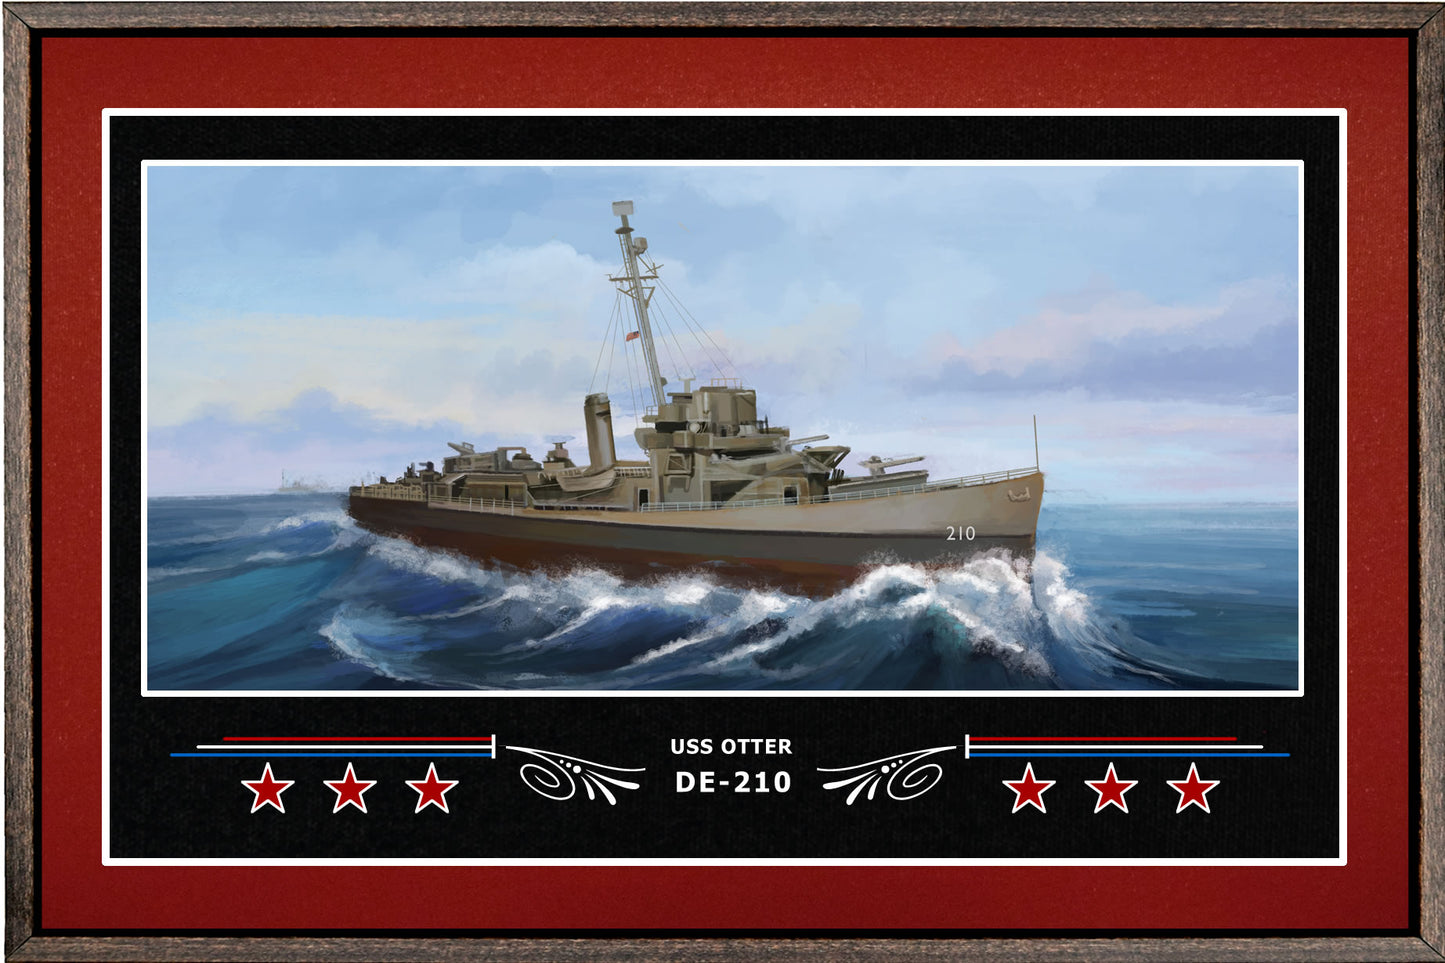 USS OTTER DE 210 BOX FRAMED CANVAS ART BURGUNDY